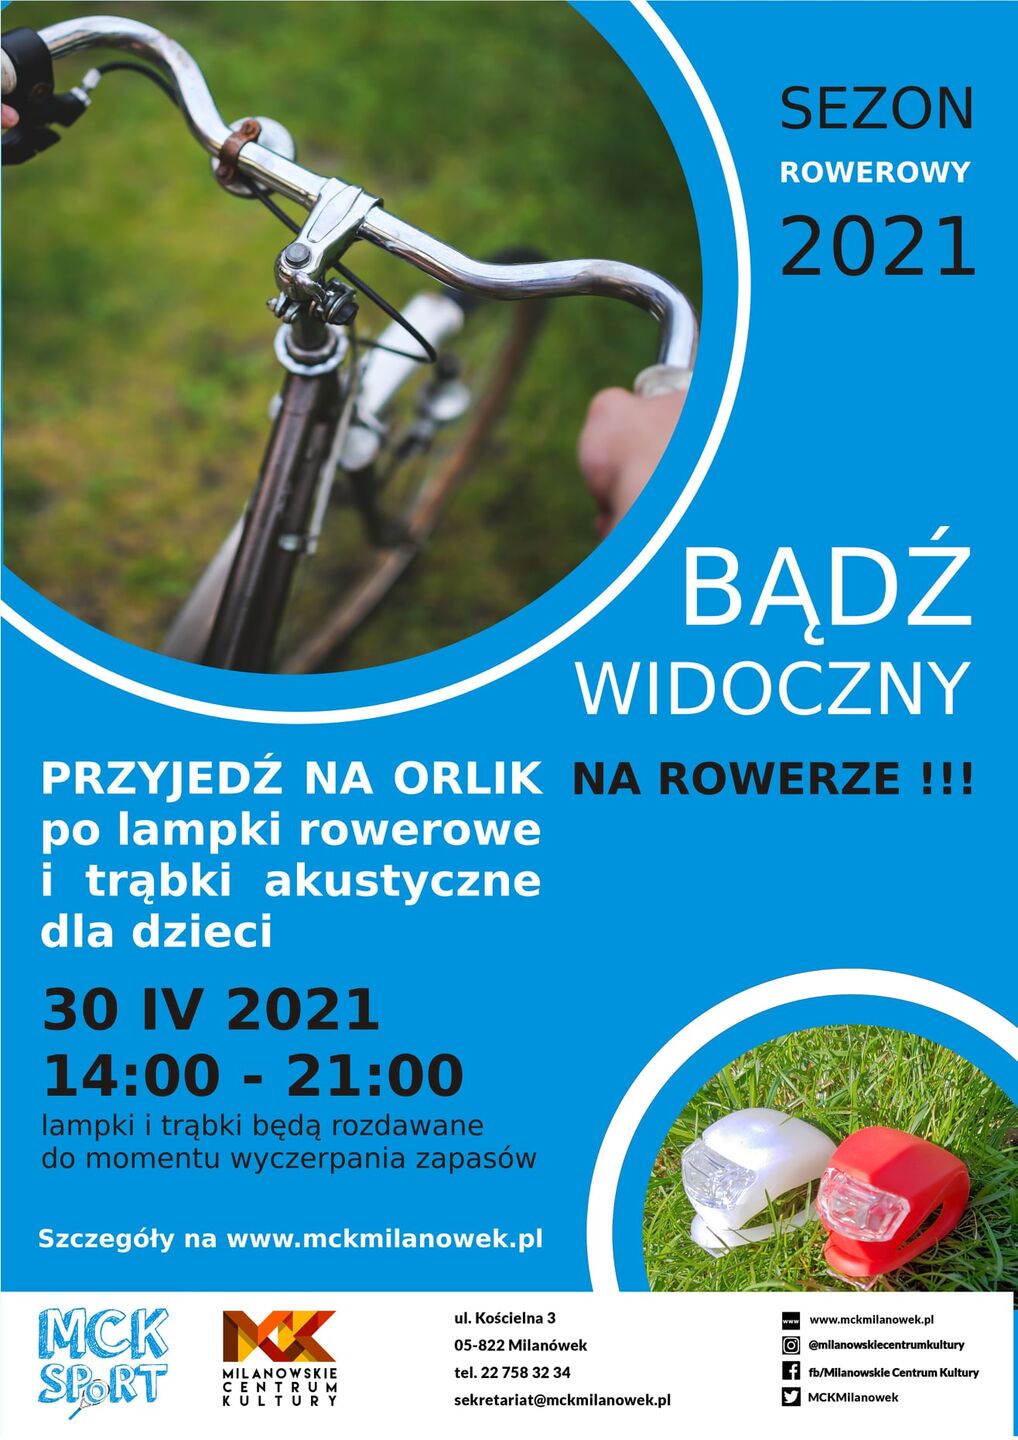 Bądź widoczny na rowerze! - plakat MCK